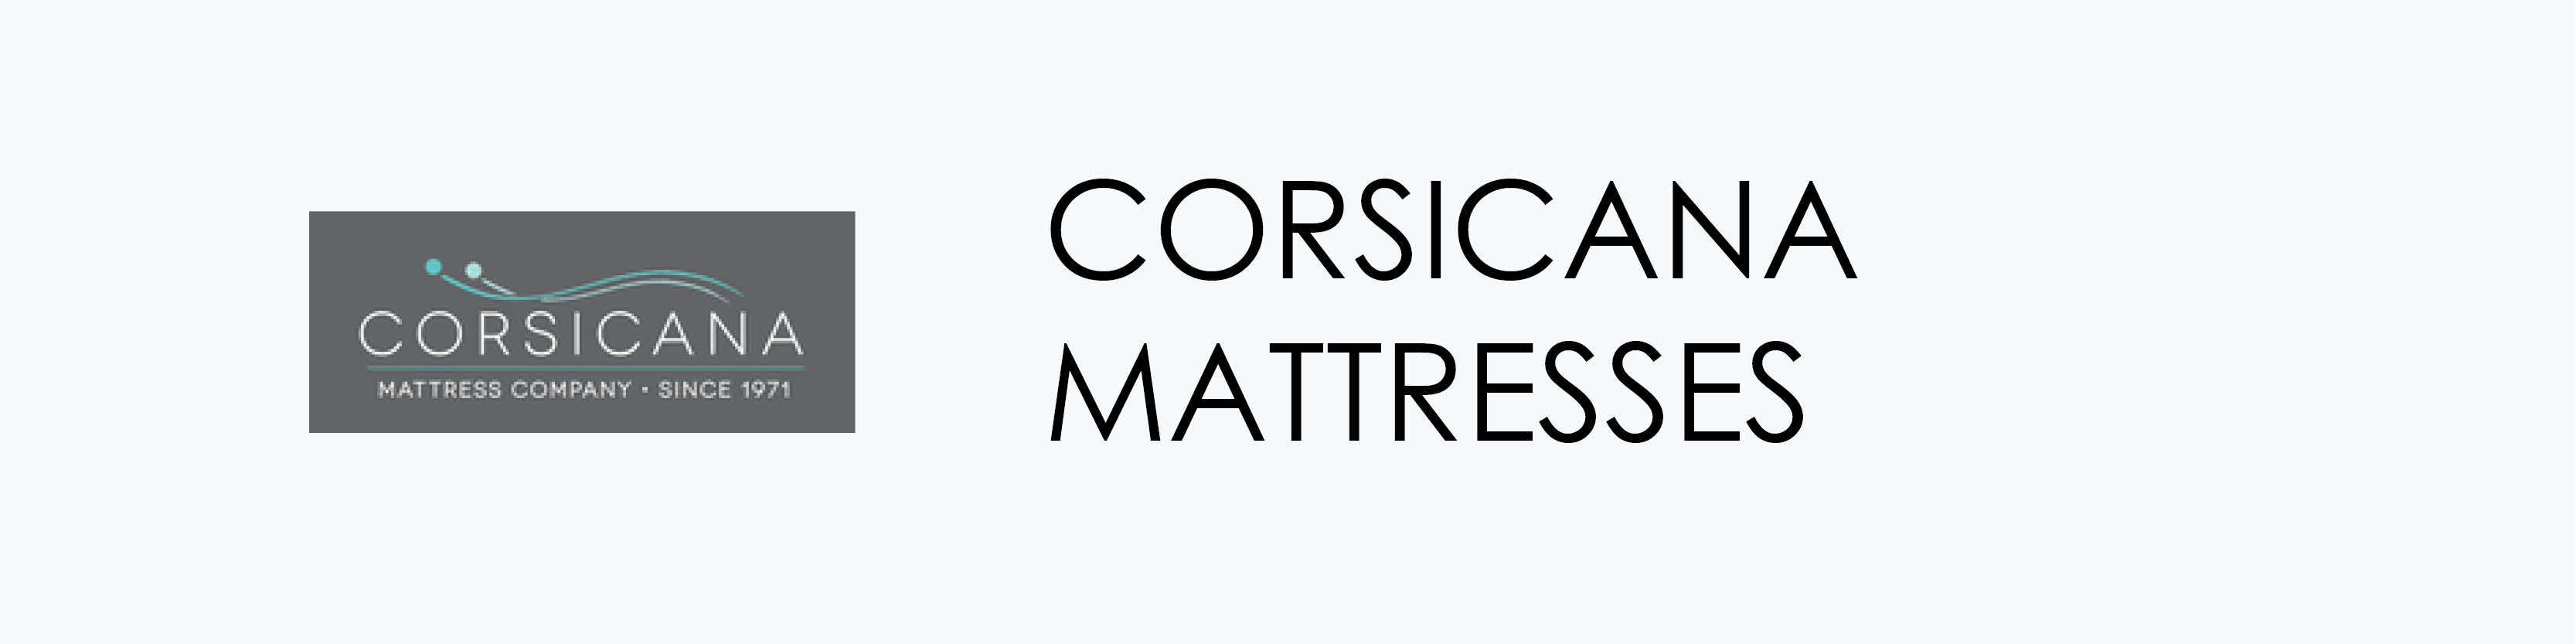 Corsicana Mattresses